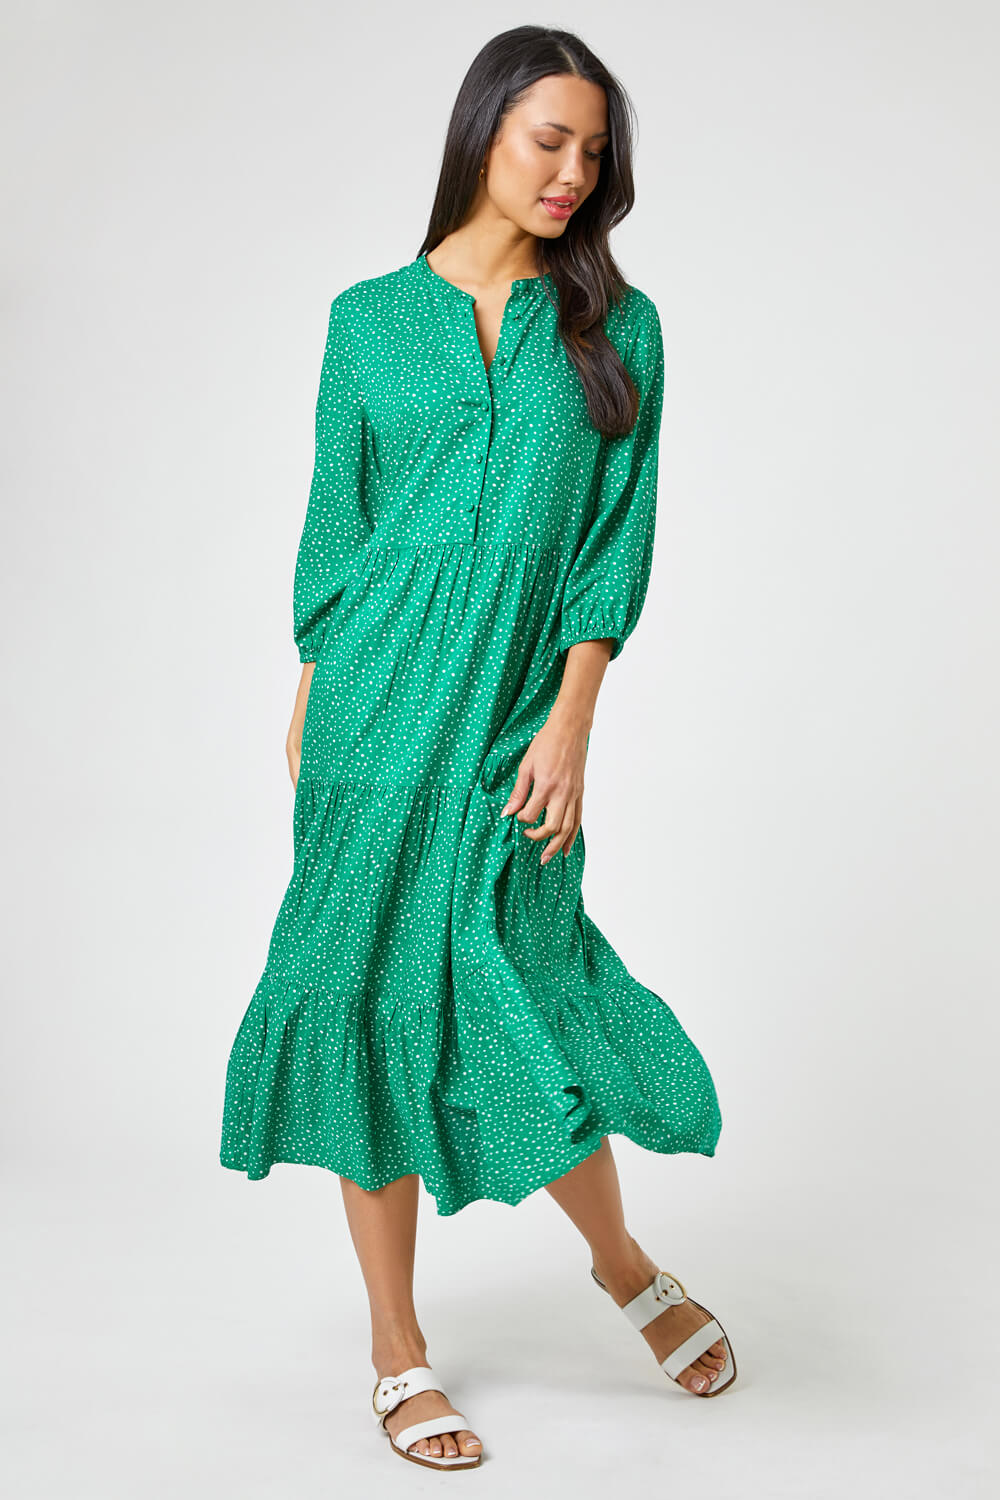 Spot Print Tiered Button Midi Dress in Green - Roman Originals UK